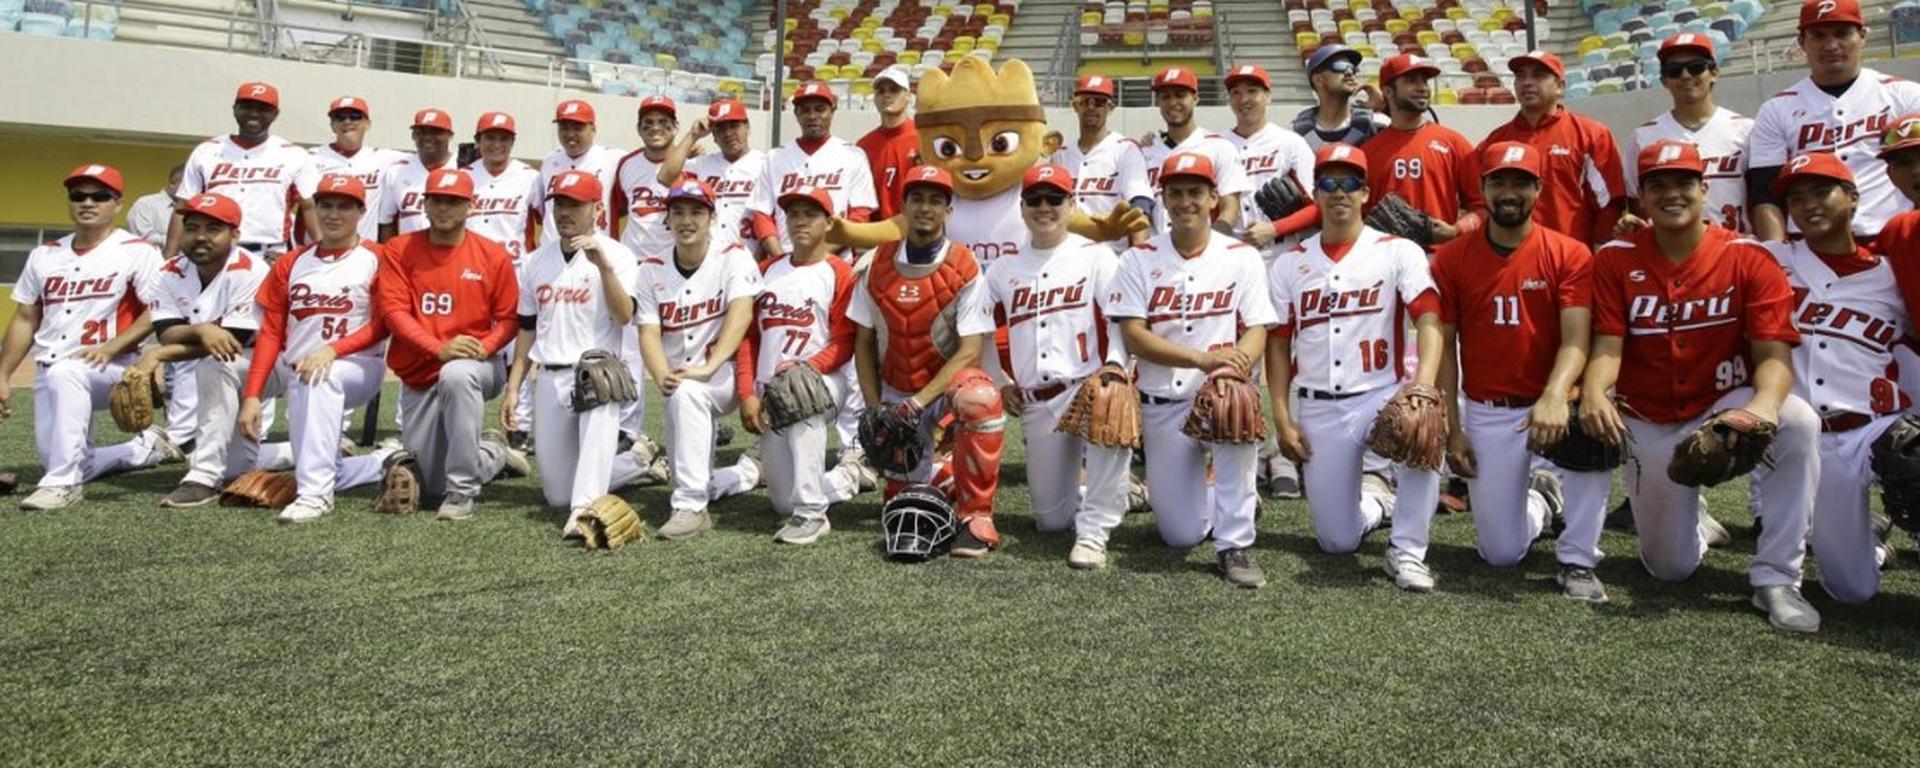 El Clásico Mundial de Béisbol: ¿Por qué es “un sueño tan lejano pero no imposible” para el deporte peruano? 